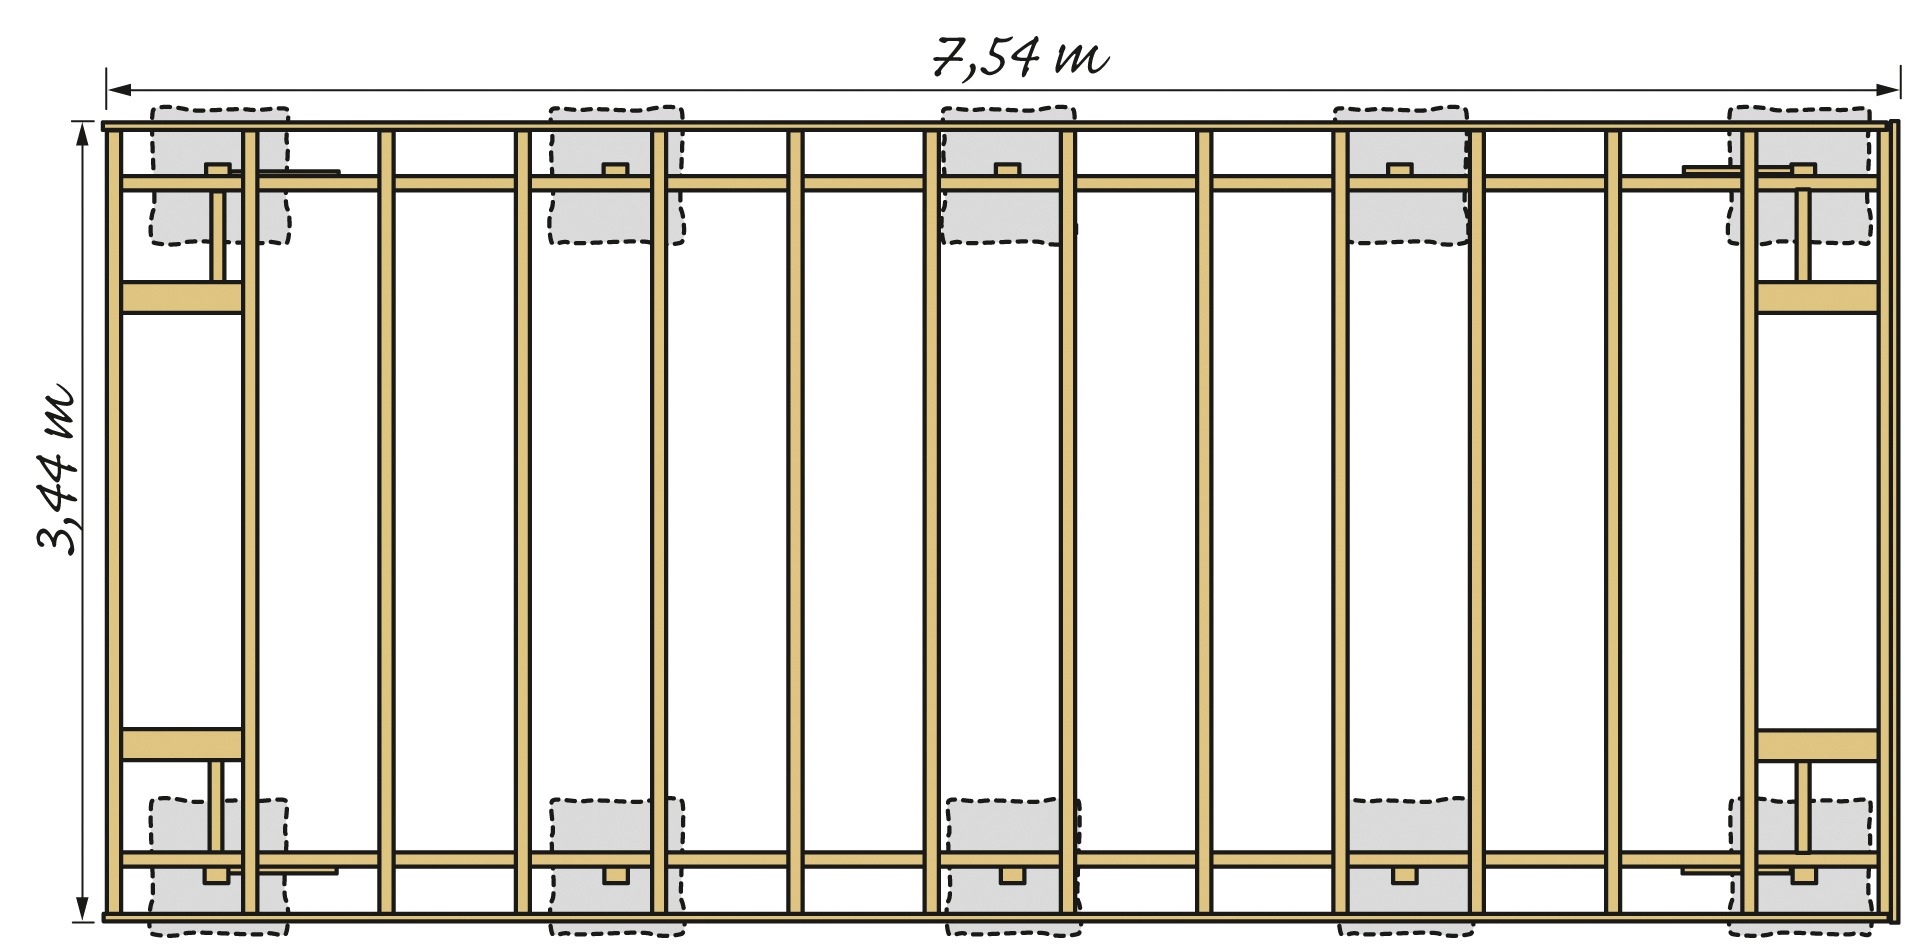 Kiehn-Holz Einzelcarport »KH 320 / KH 321«, Holz, 275 cm, anthrazit, Stahl-Dach, versch. Farben